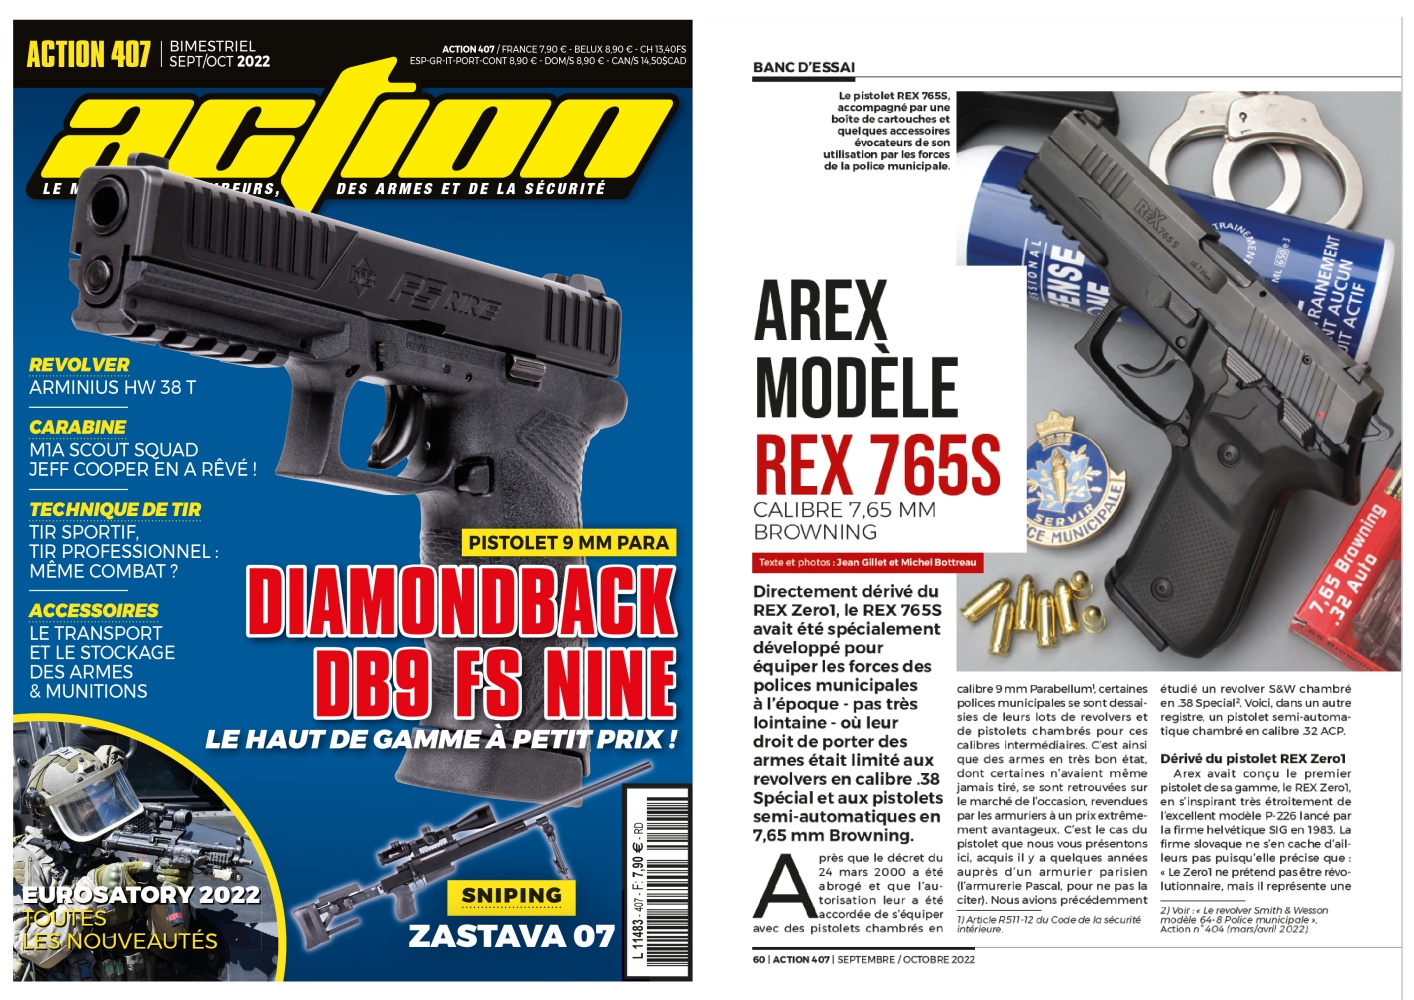 Le banc d’essai du pistolet Arex REX 765S a été publié sur 6 pages dans le magazine Action n°407 septembre-octobre 2022.